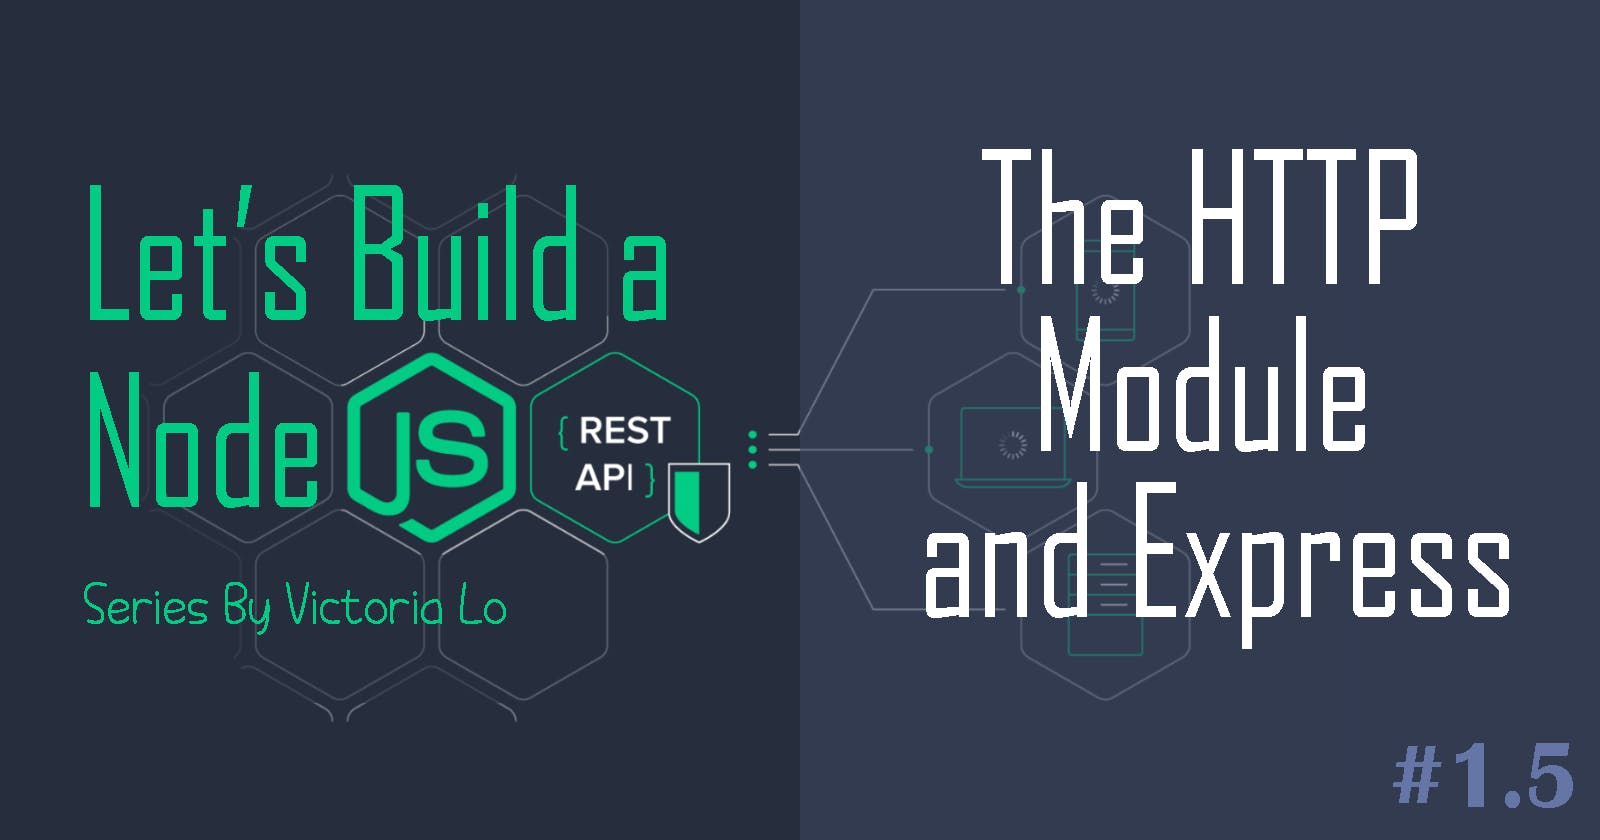 Build a REST API with Node.js: HTTP Module & Express